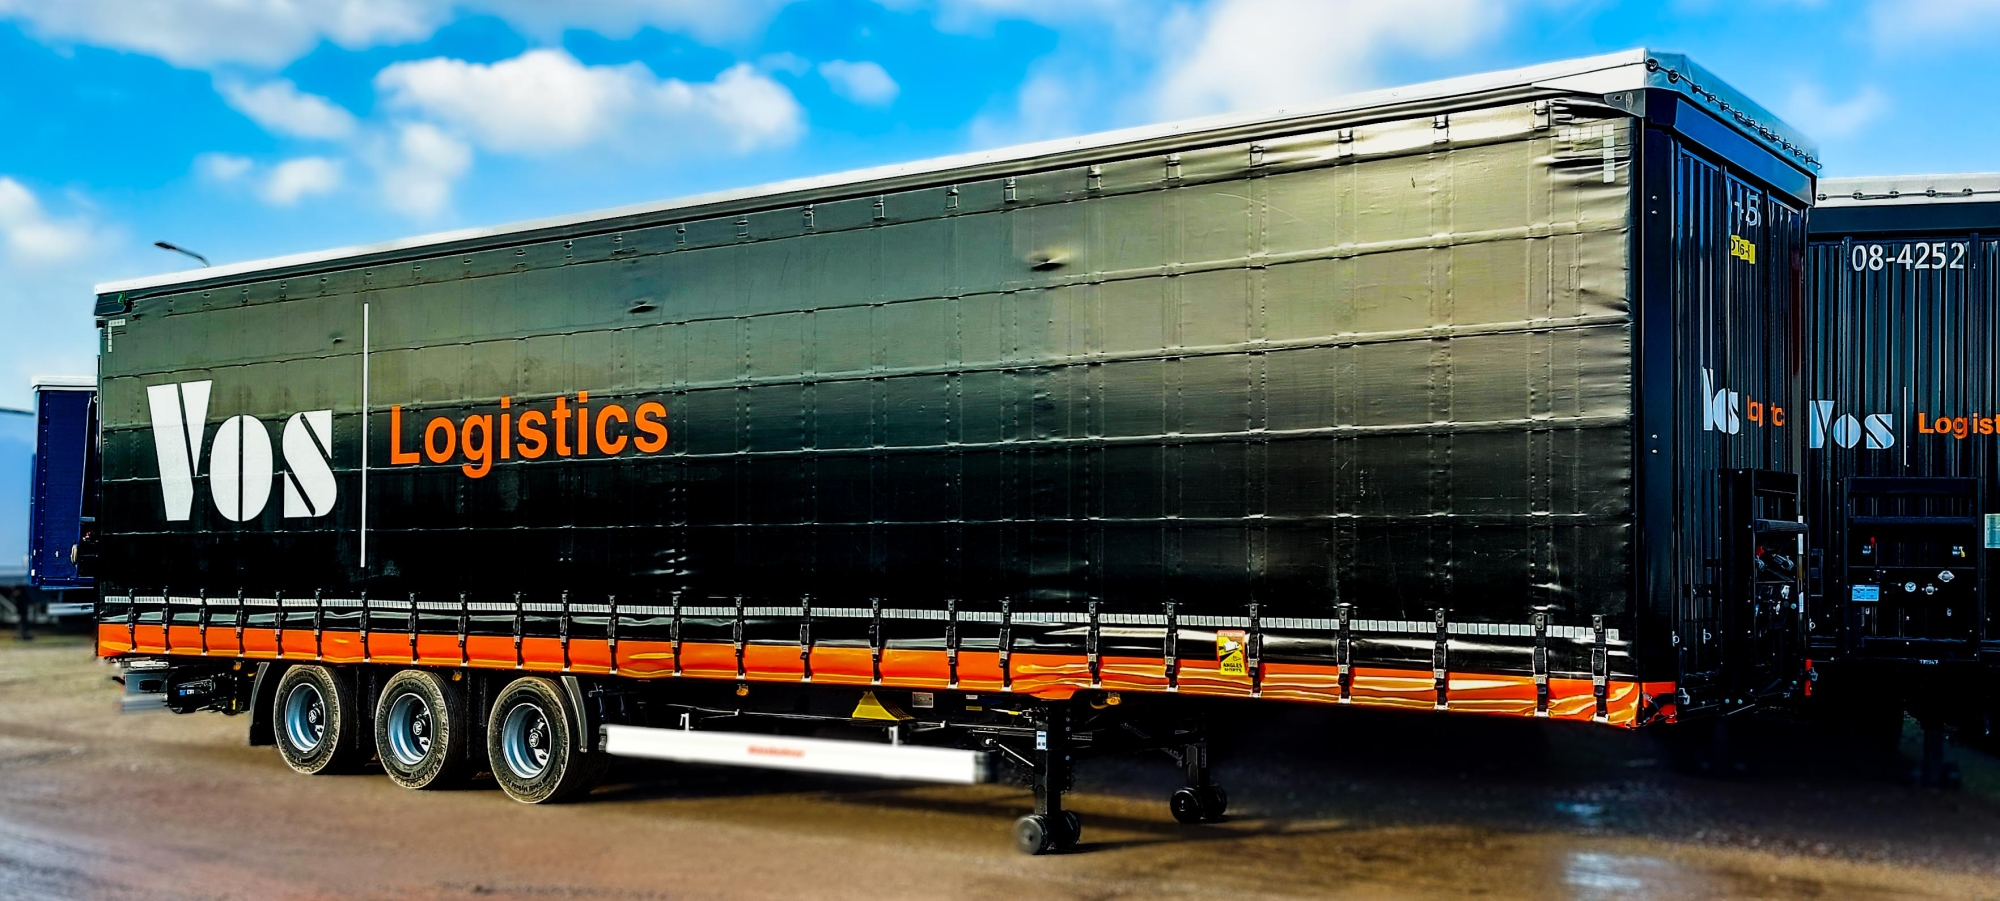 RolaSafe semi-trailer of Vos Logistics